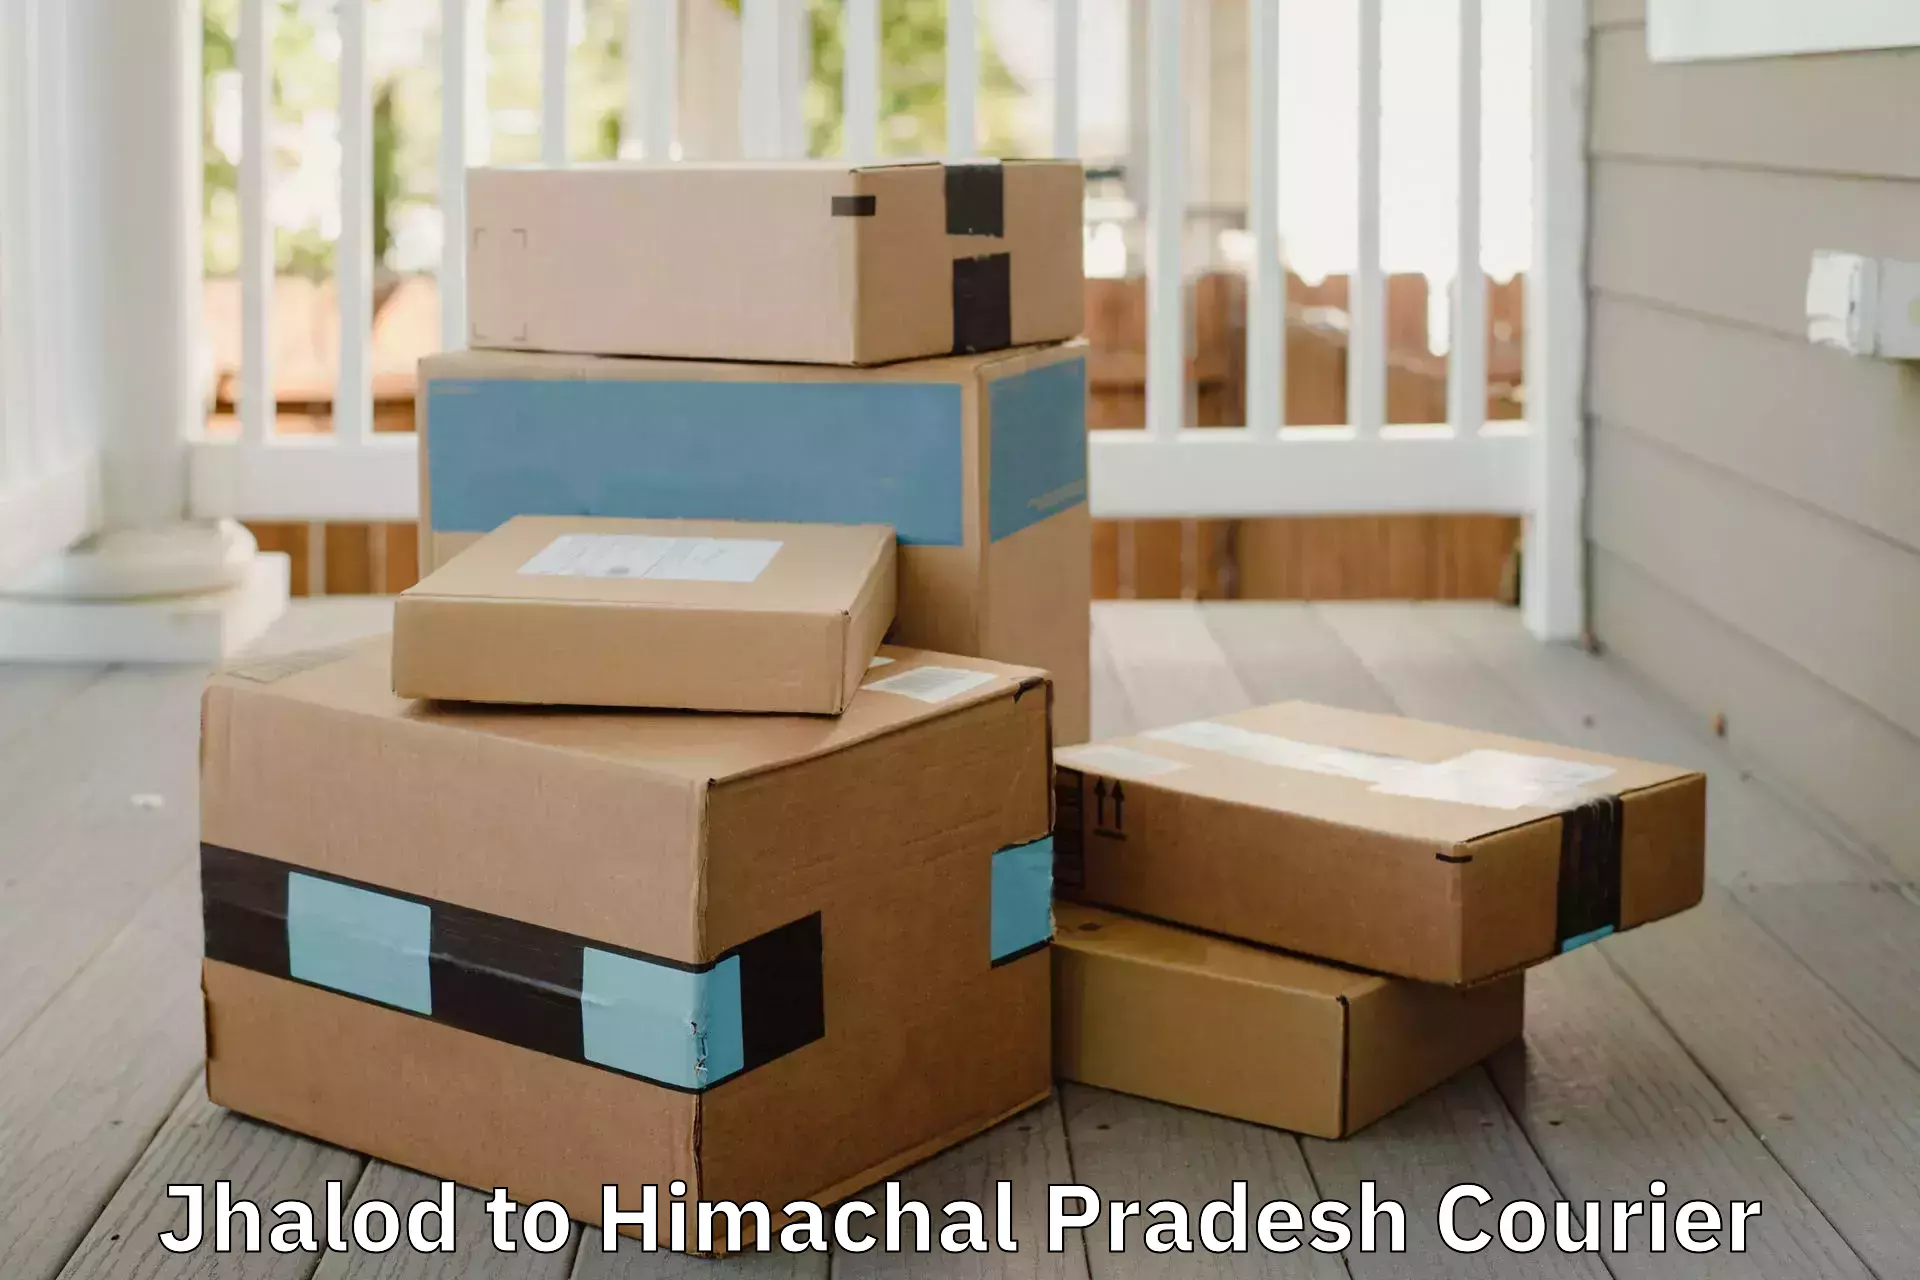 Reliable household shifting Jhalod to Himachal Pradesh